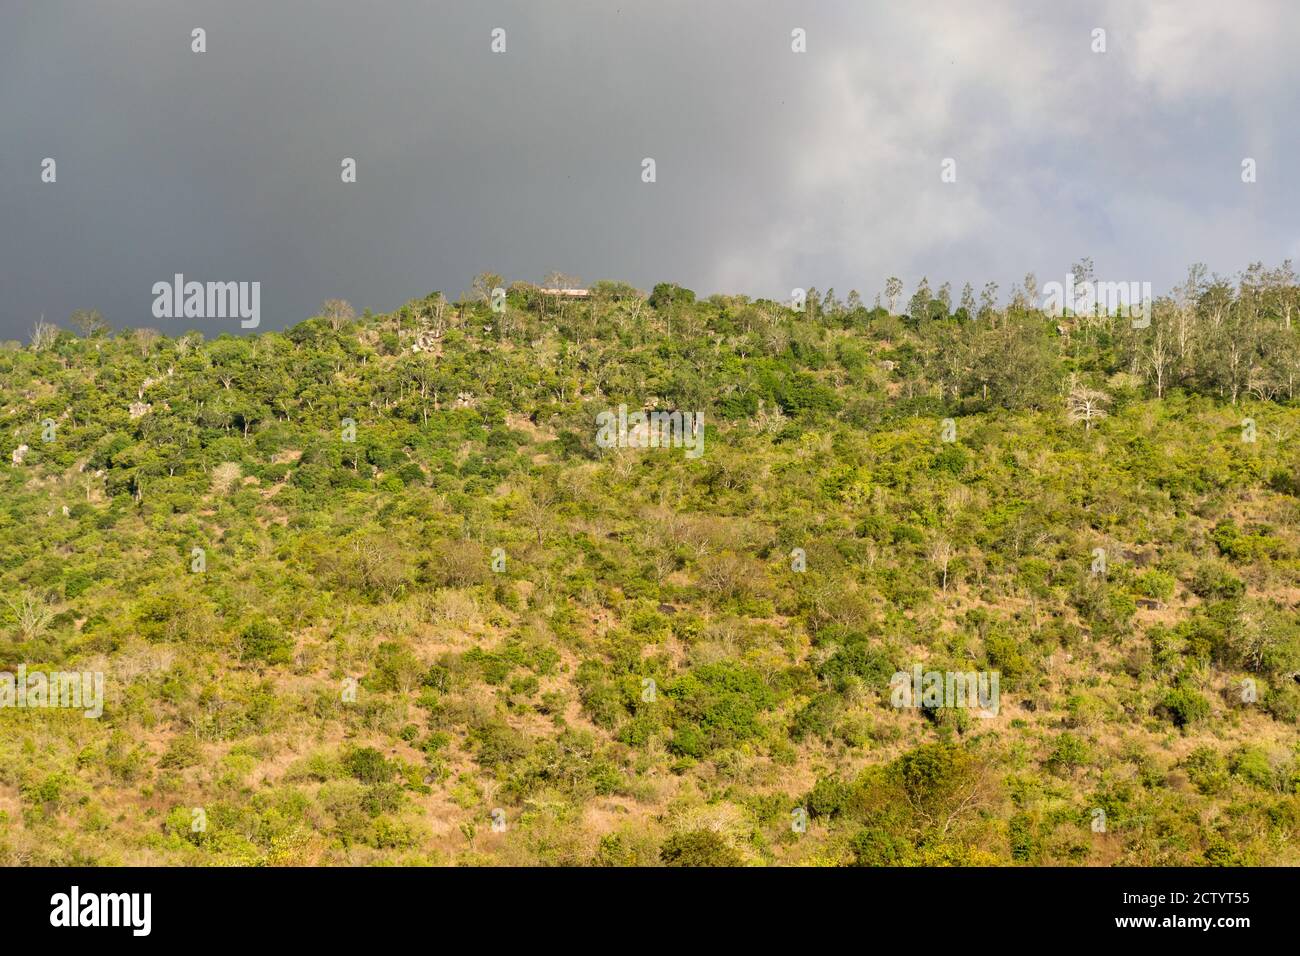 Une section de la réserve nationale de Shimba Hills, montrant des arbres sur une grande colline, Kenya, Afrique de l'est Banque D'Images